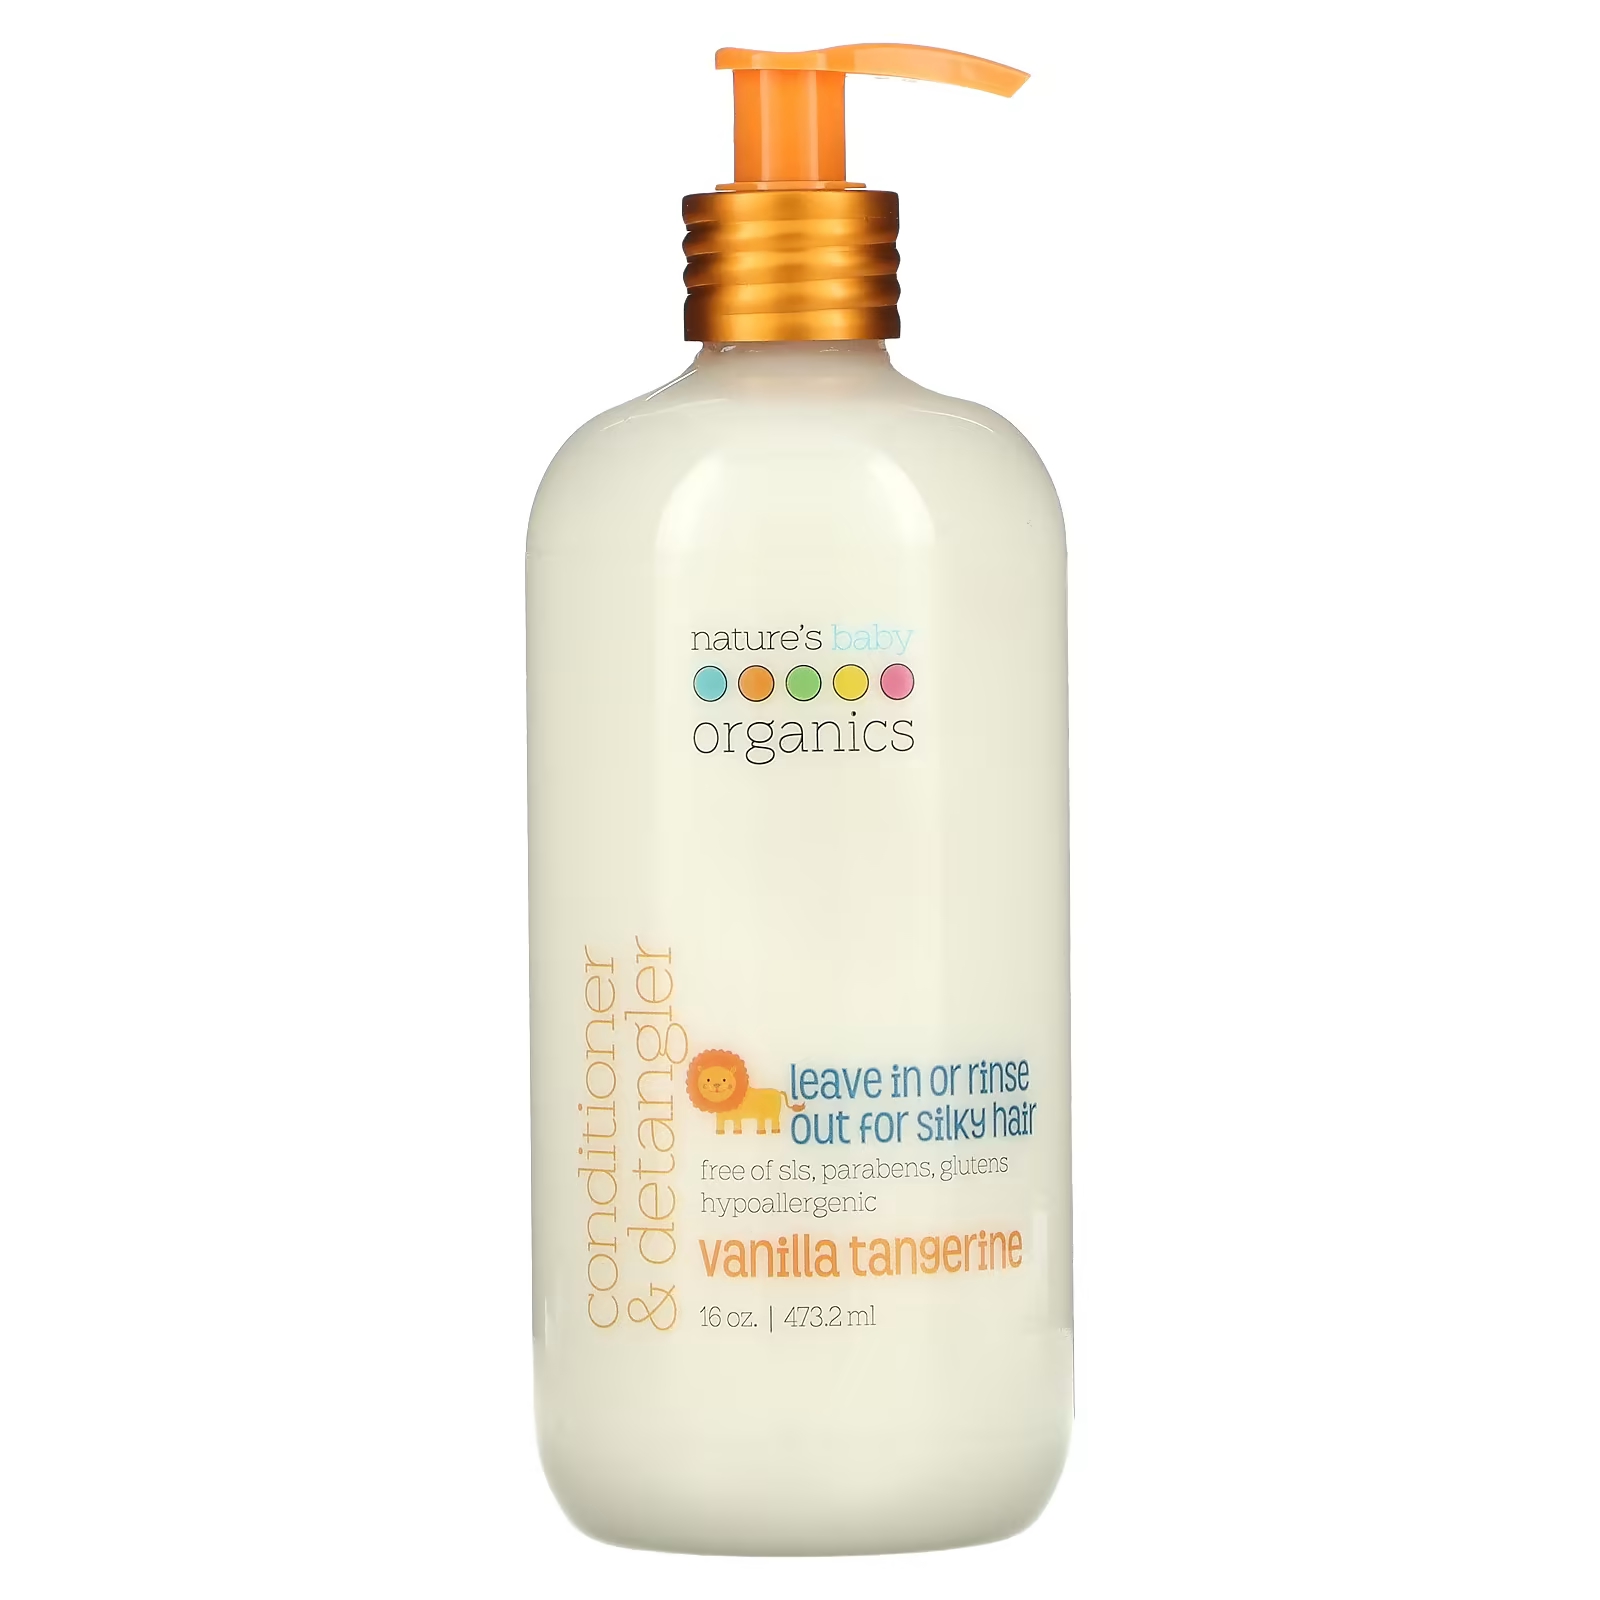 Кондиционер Nature's Baby Organics & Detangler Vanilla Tangerine для распутывания волос, 473,2 мл